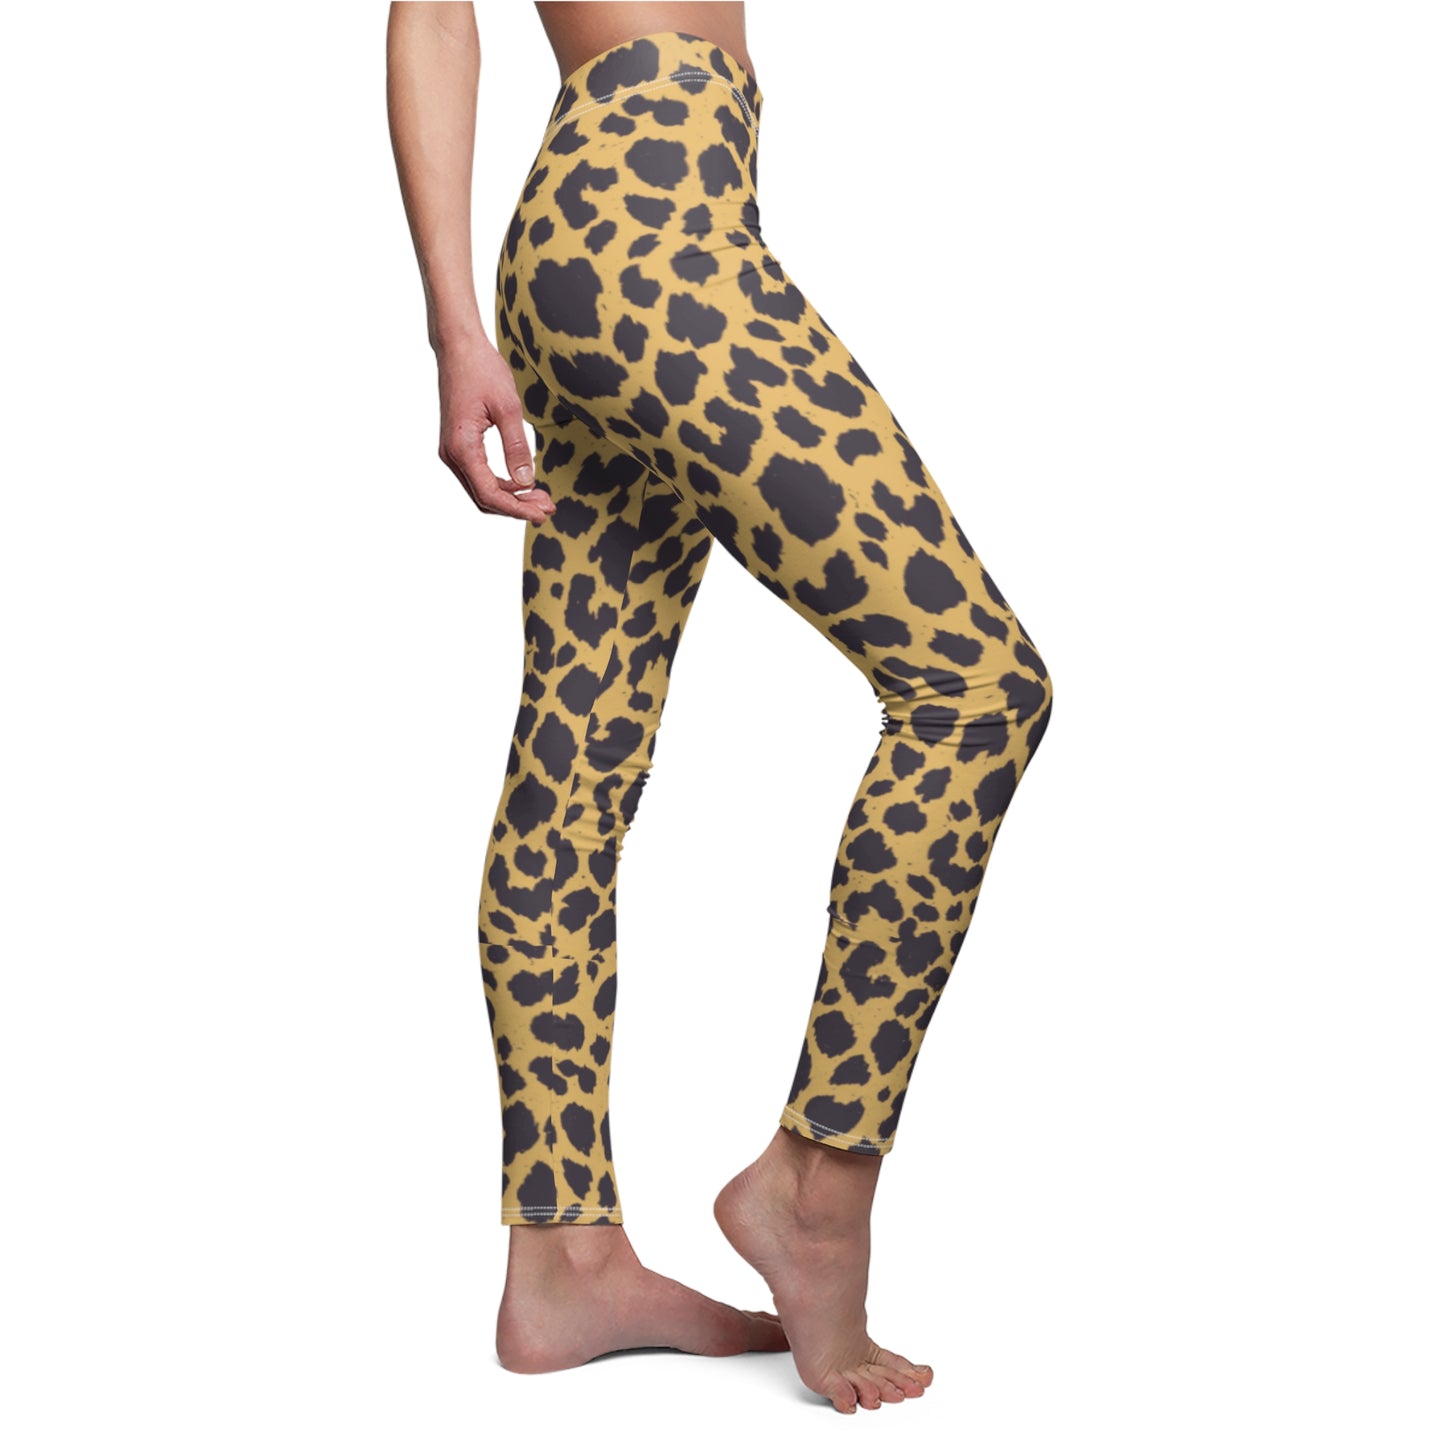 Cheetah Print, Brushed Suede Feel, Full-Length Leggings